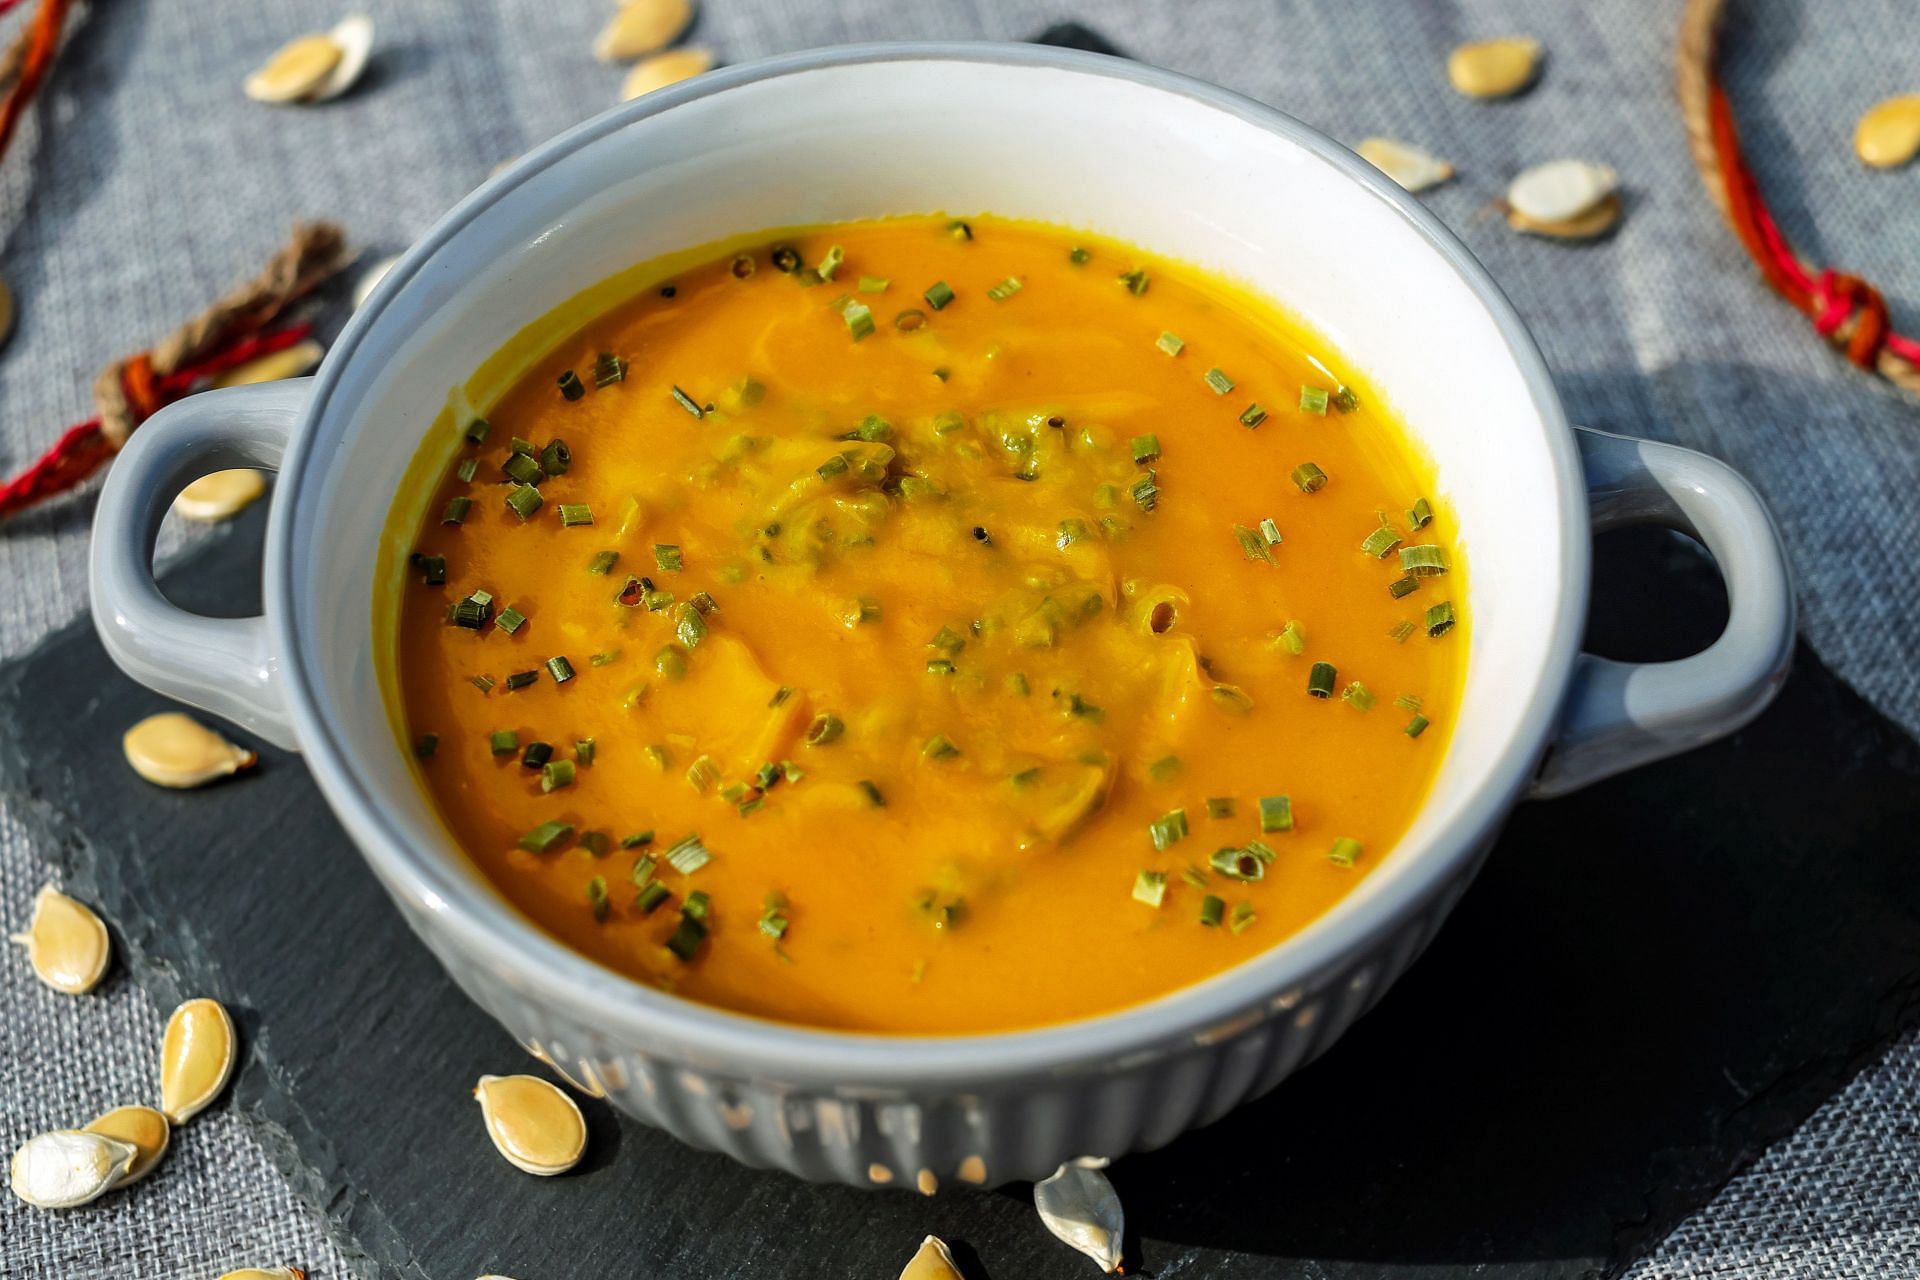 Fewer calories in lentil soup makes it a healthy option. (Image via Pexels/ Pixabay)